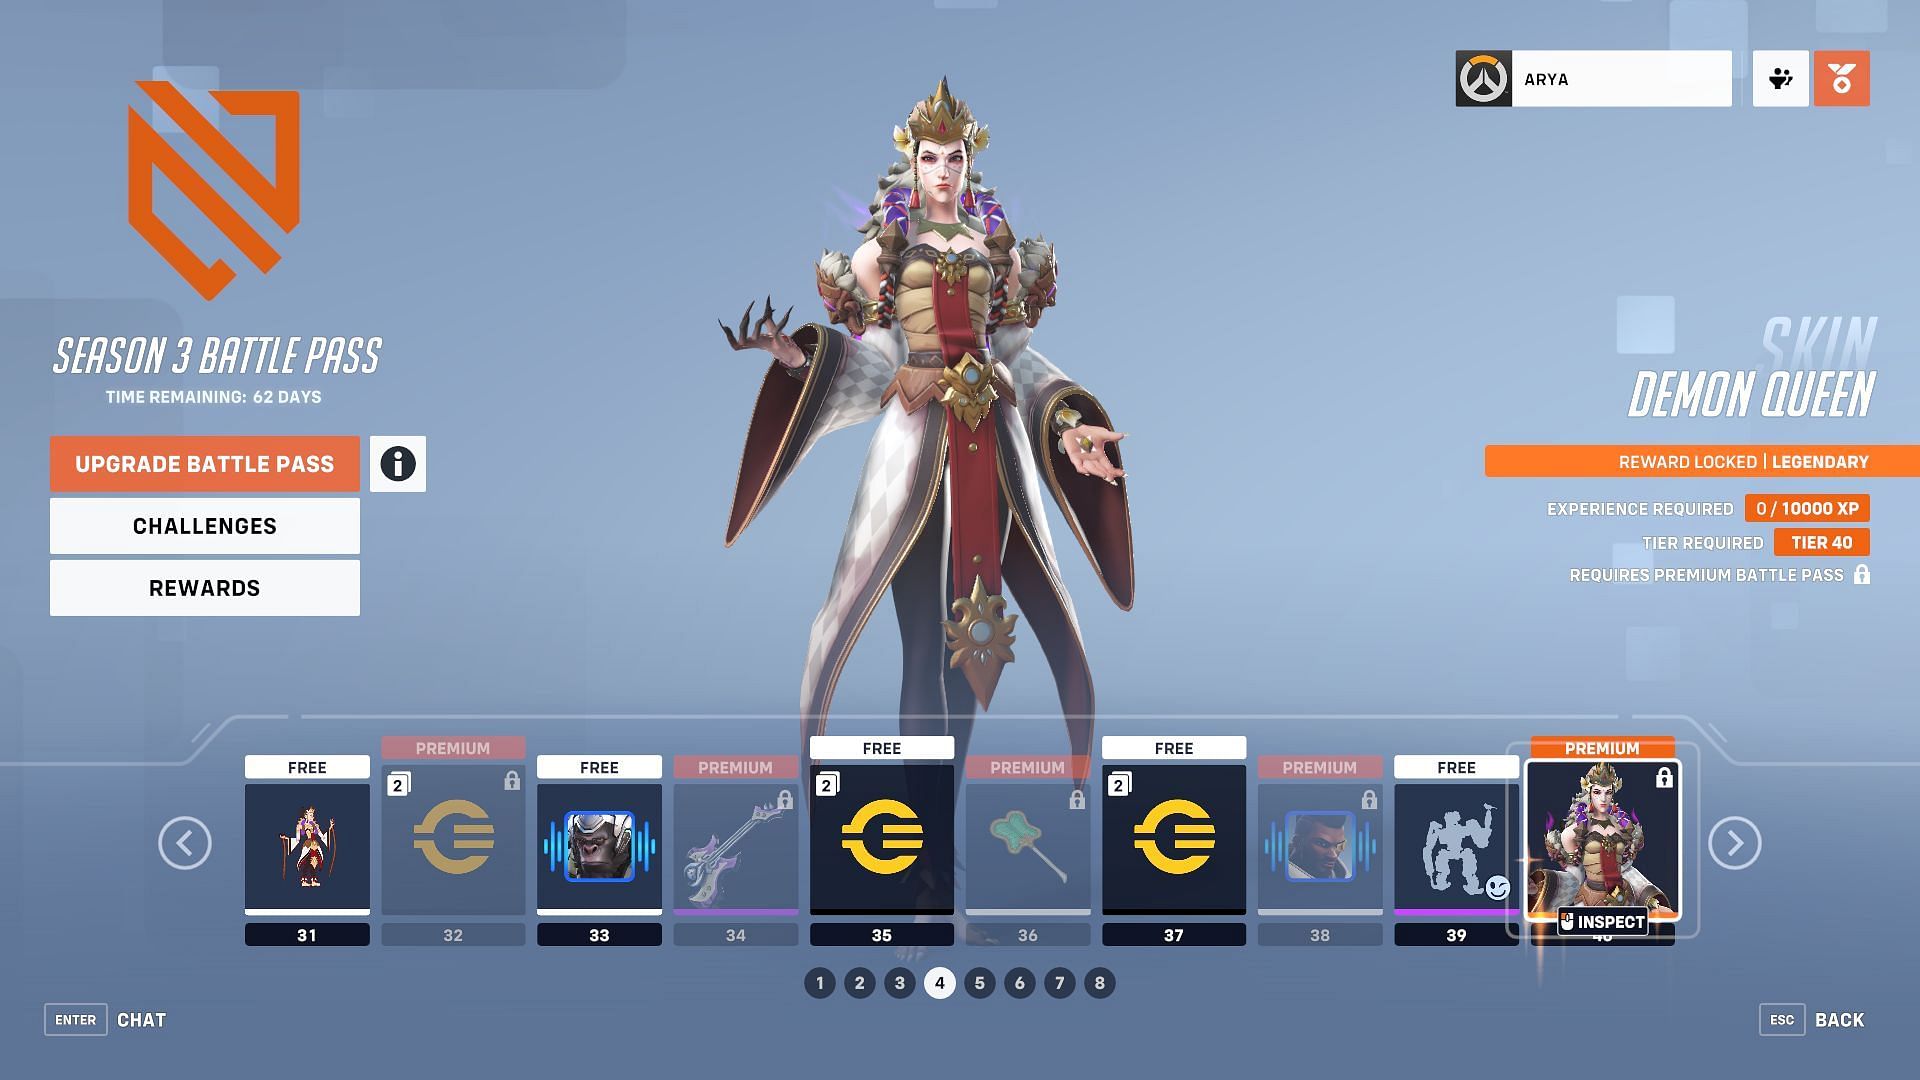 Legendary Demon Queen Moira Skin (Image via Blizzard)